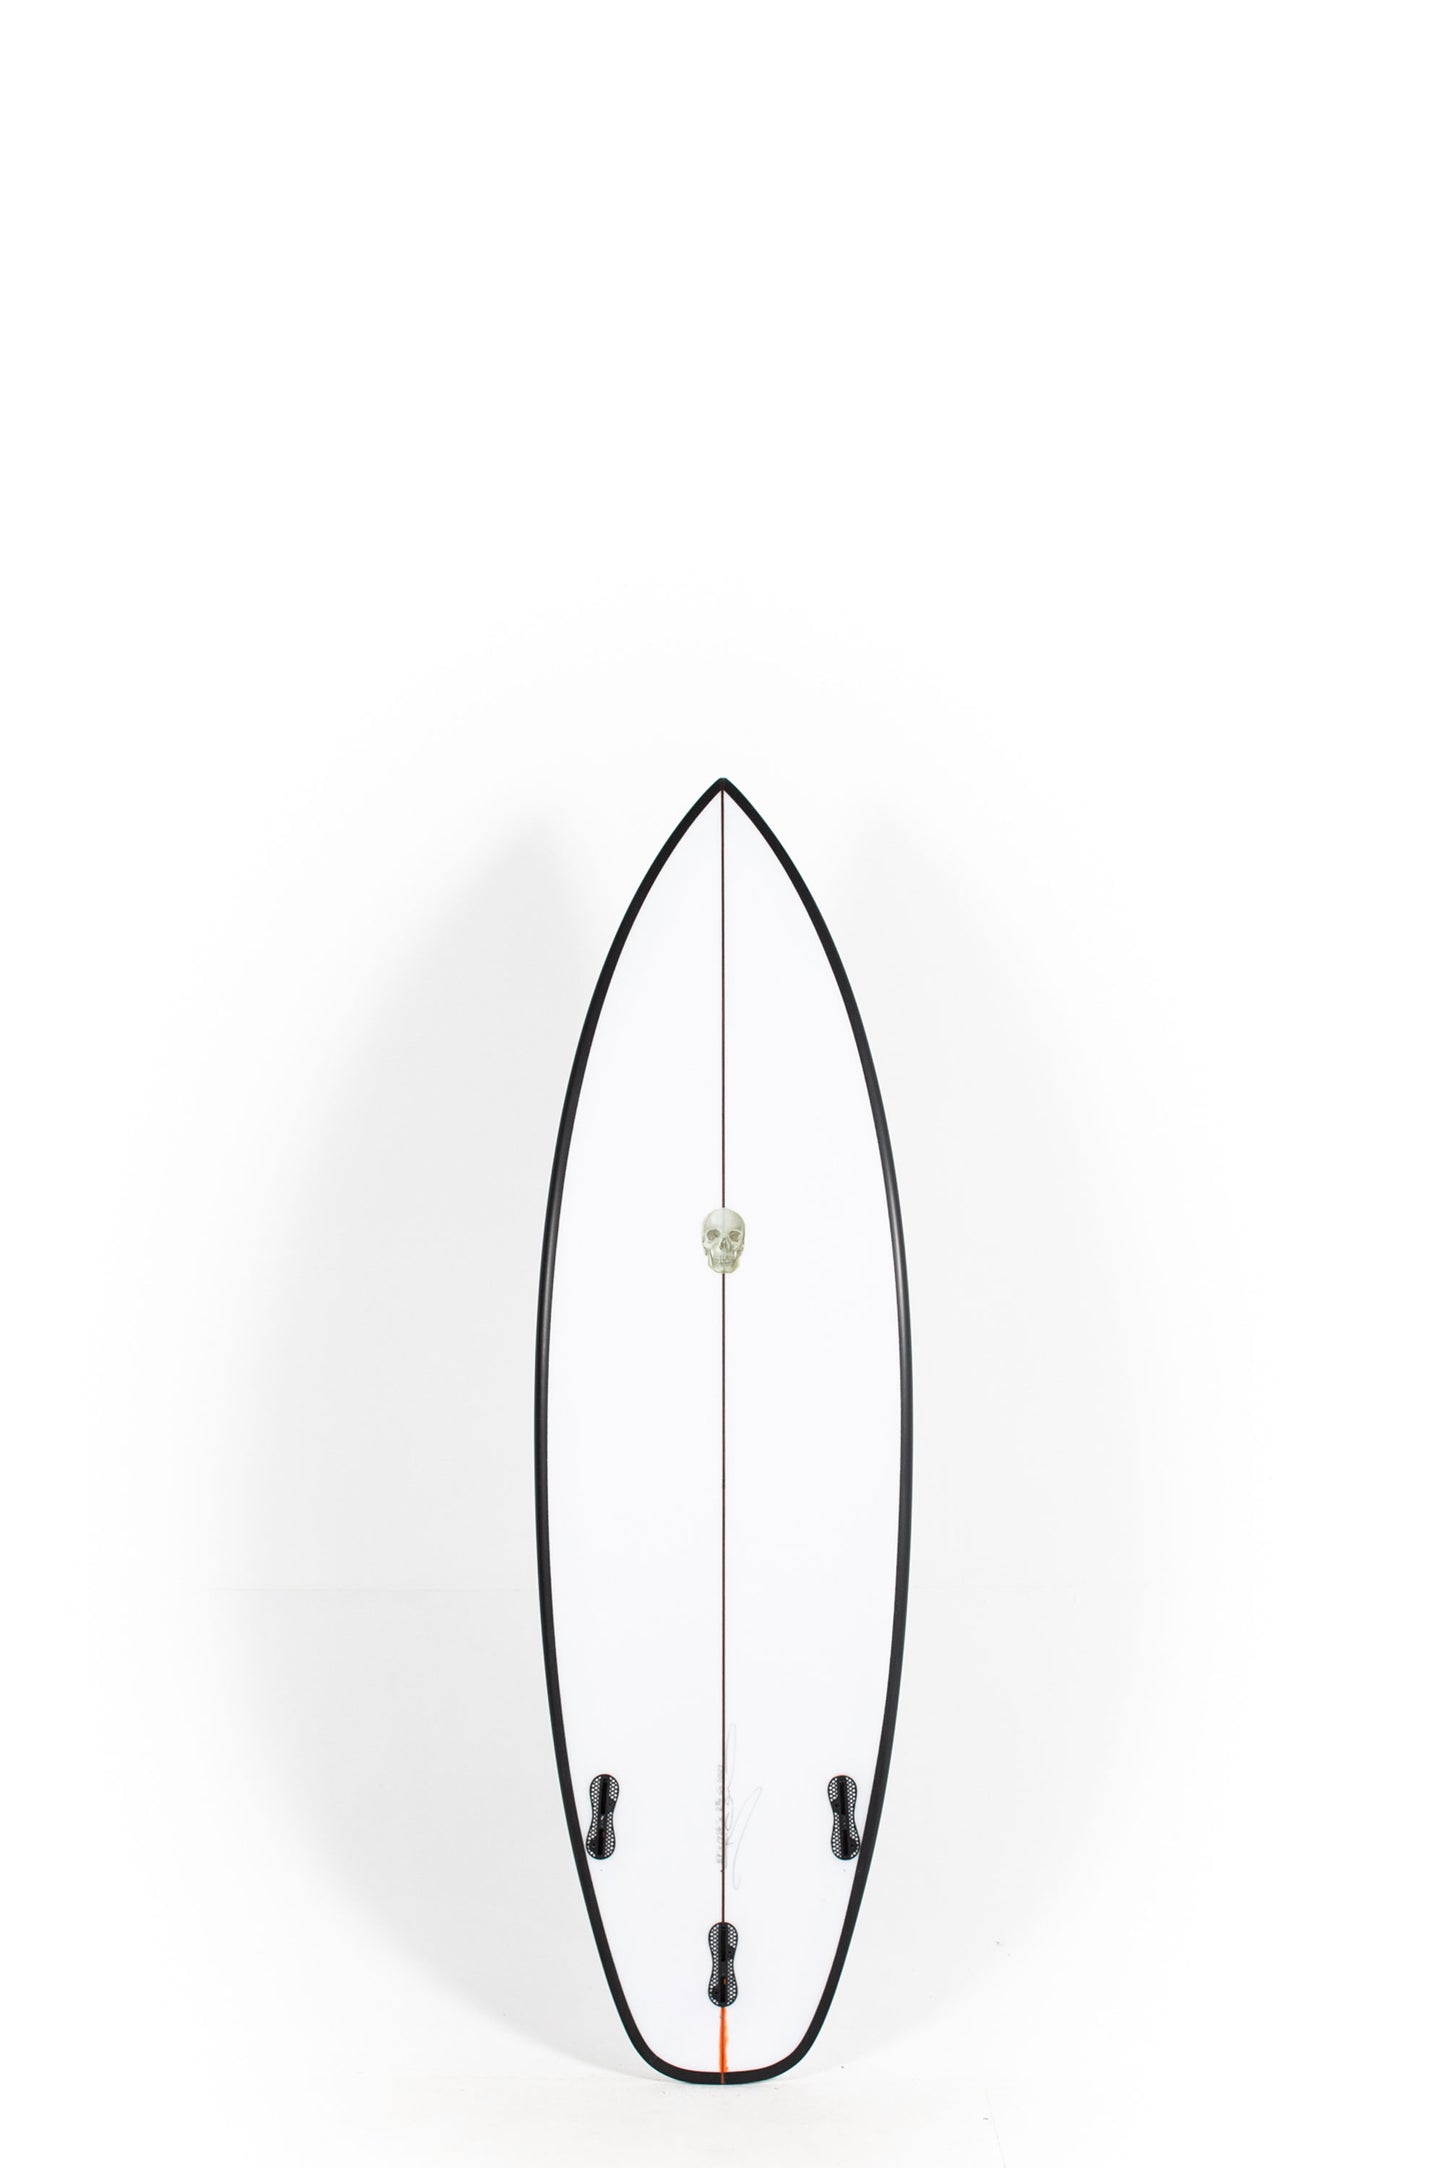 Pukas Surf Shop - Christenson Surfboards - OP1 - 5'7" x 19 1/4 x 2 7/16 x 27,95L - CX05029